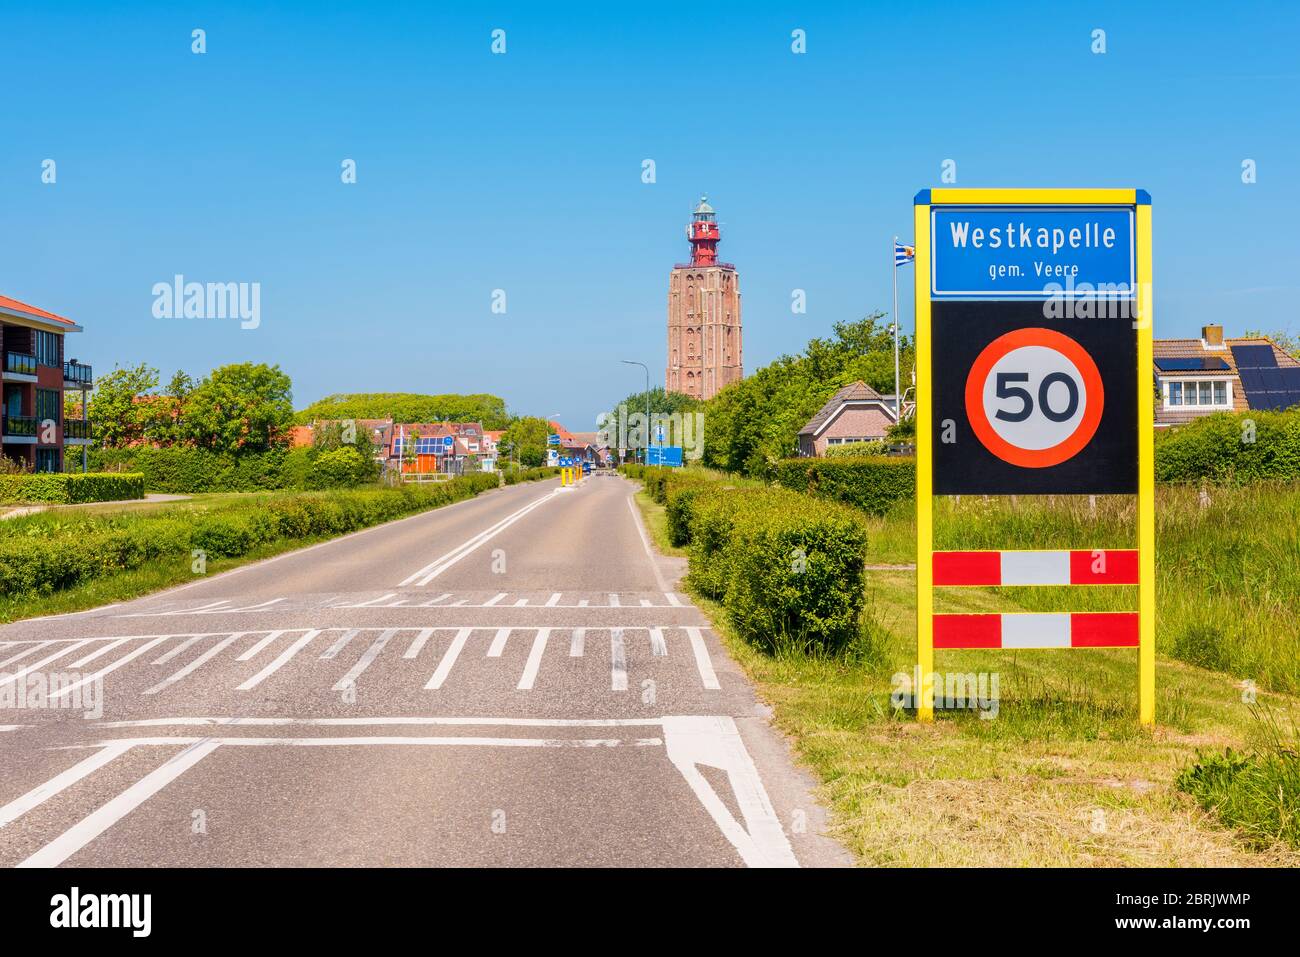 Panneau d'entrée à Westkapelle, une petite ville côtière avec environ 2,600 habitants dans la province de Zeeland, pays-Bas. Banque D'Images